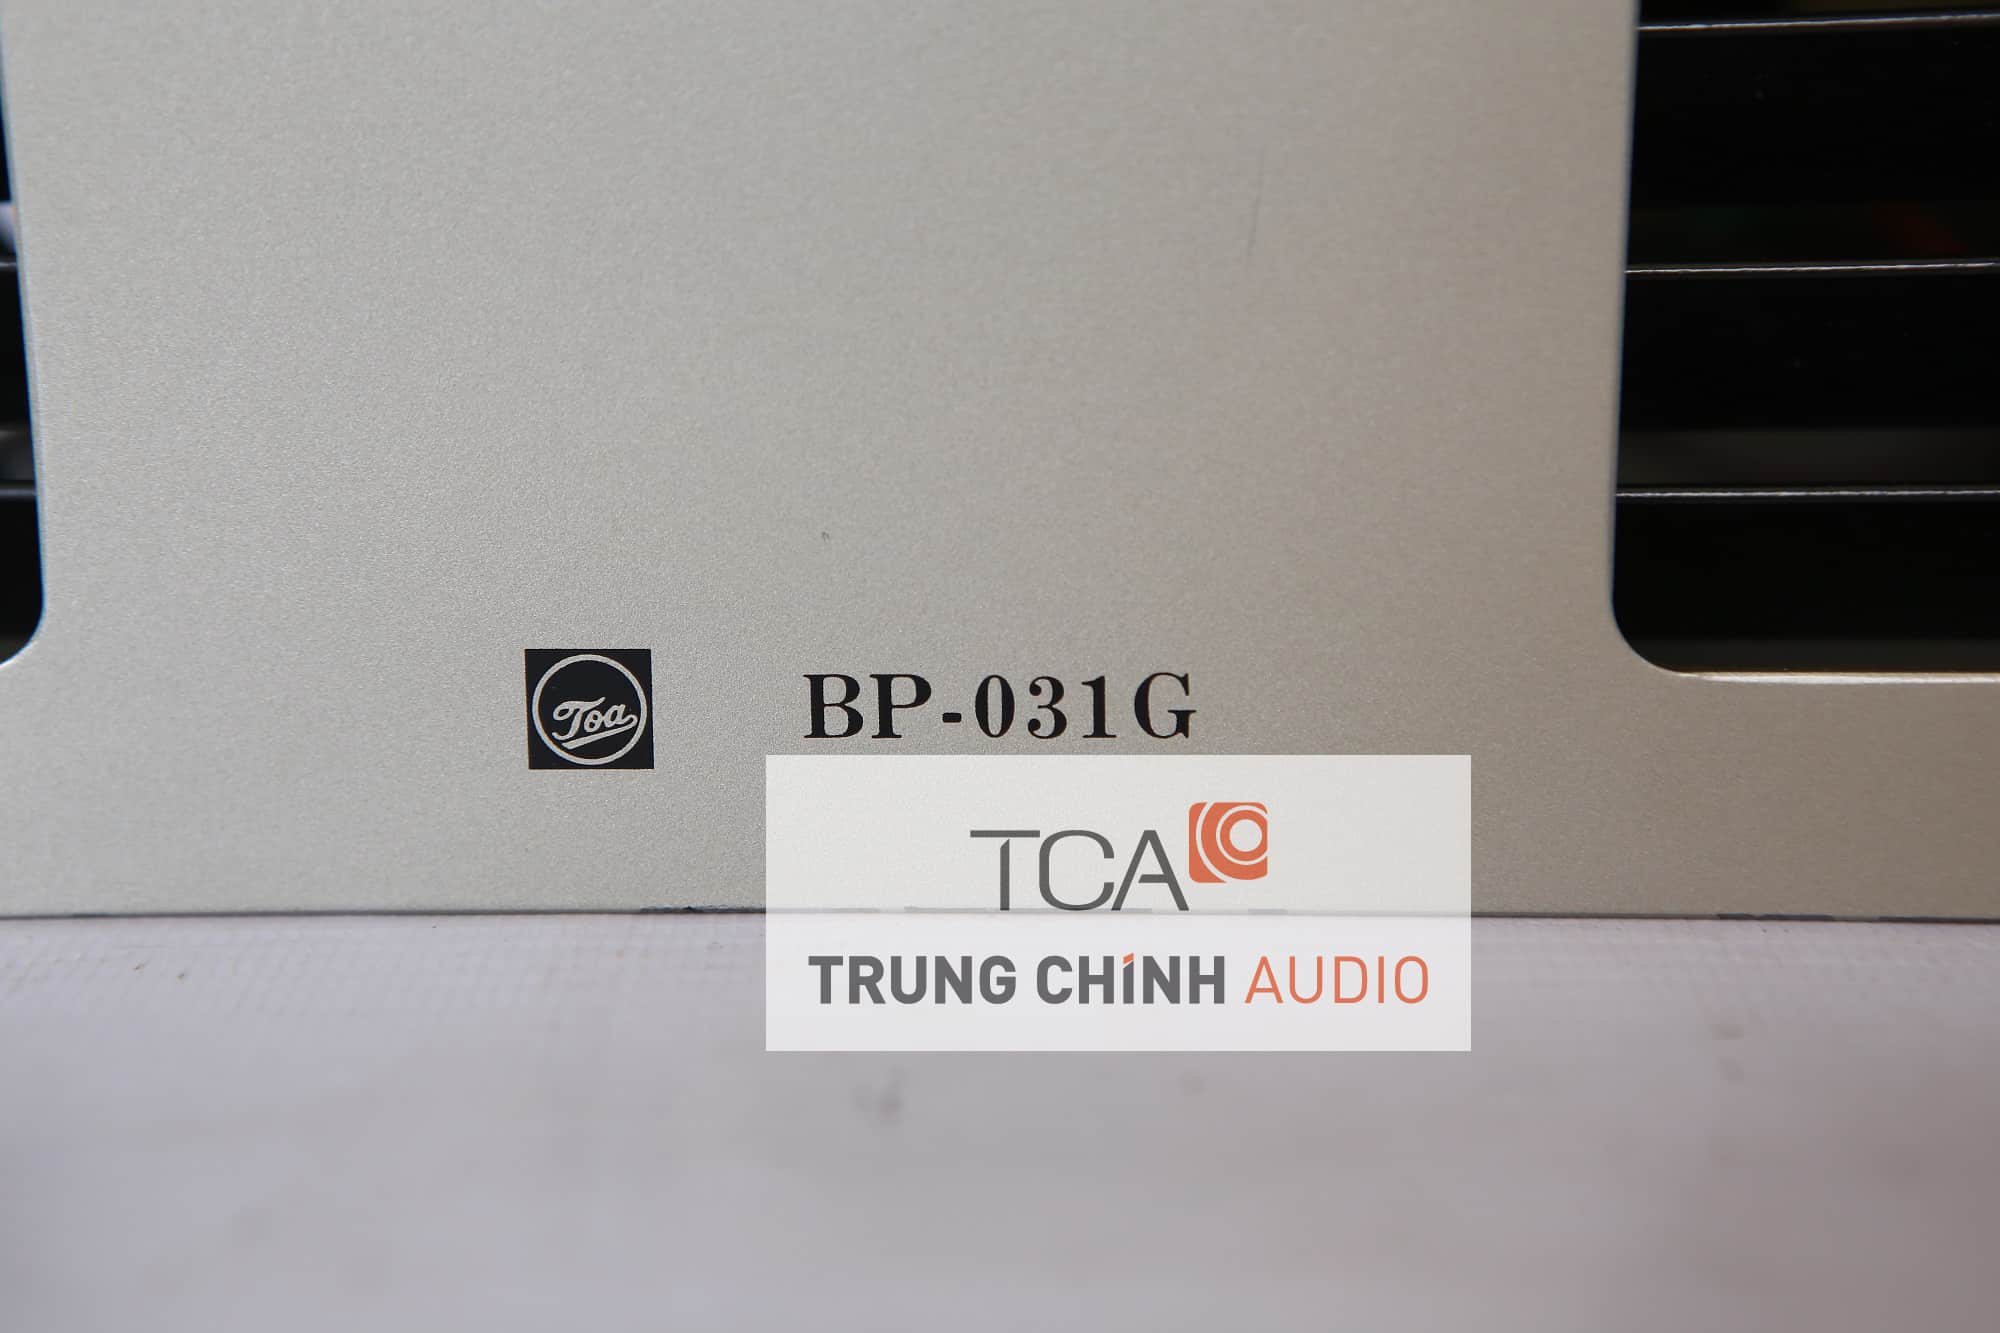 Bộ quạt thông gió TOA BP-031G chính hãng của TOA phân phối tại Toa.vn với giá tốt nhất